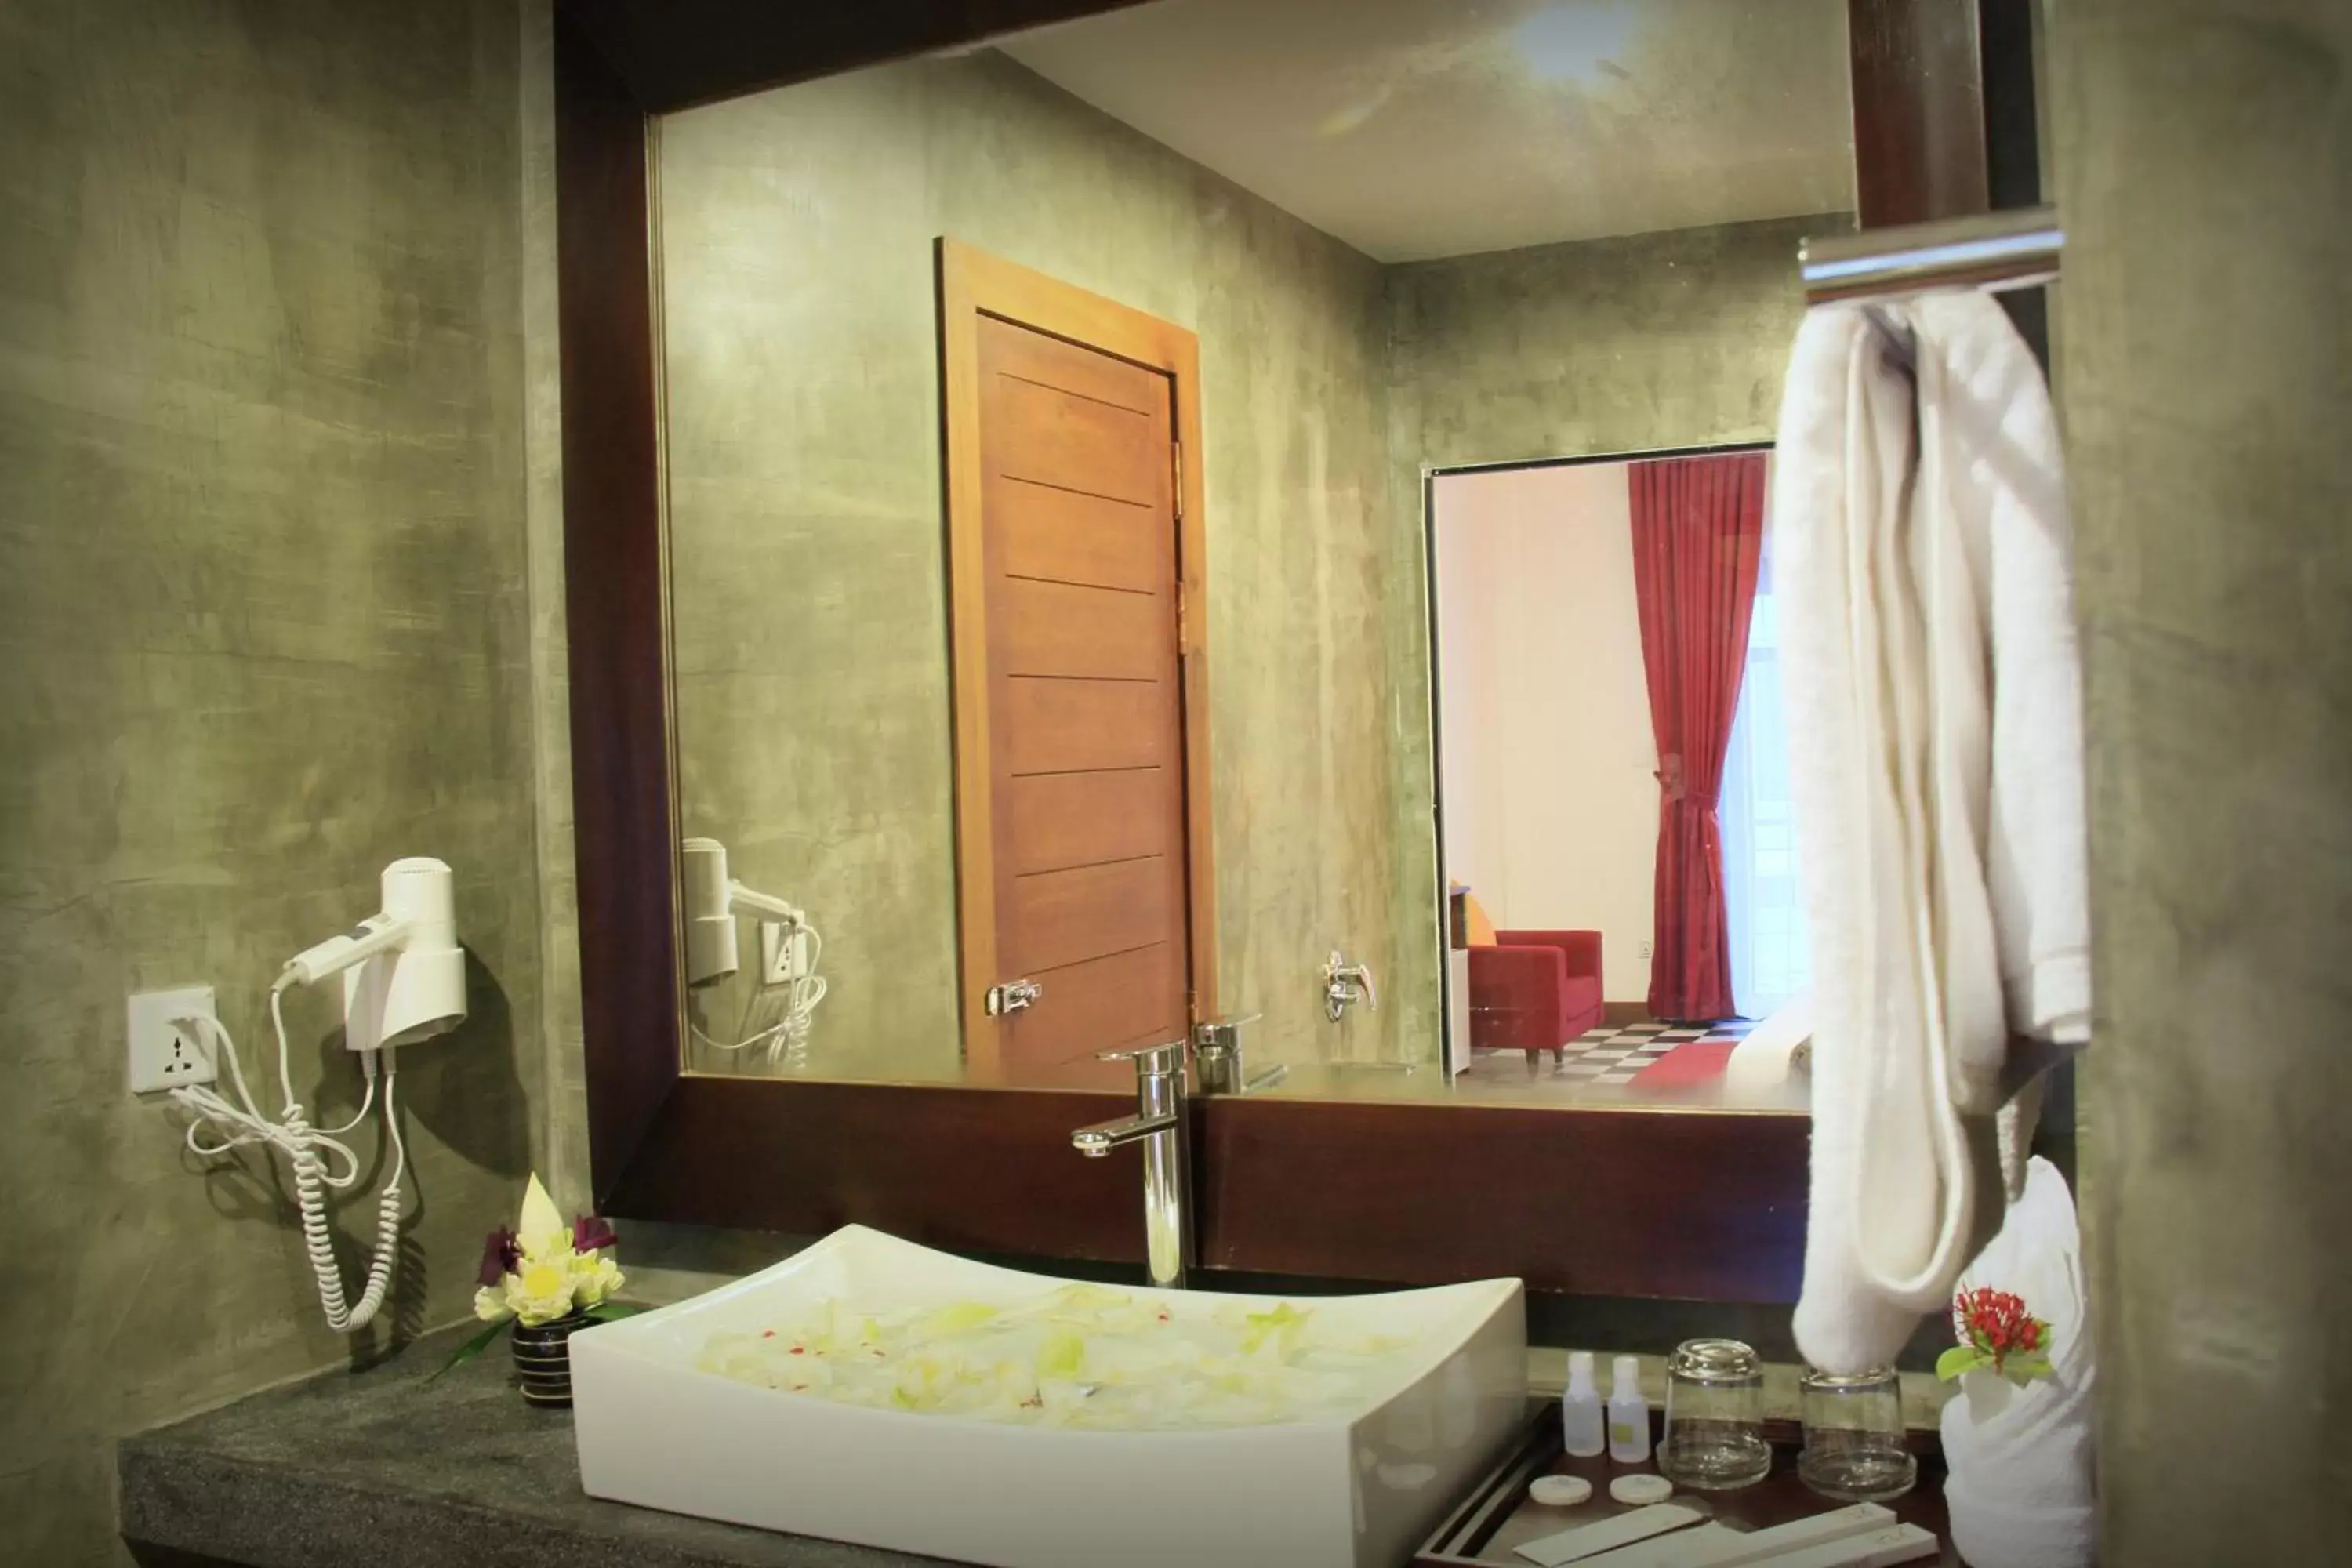 Bathroom in Mekong Angkor Palace Hotel